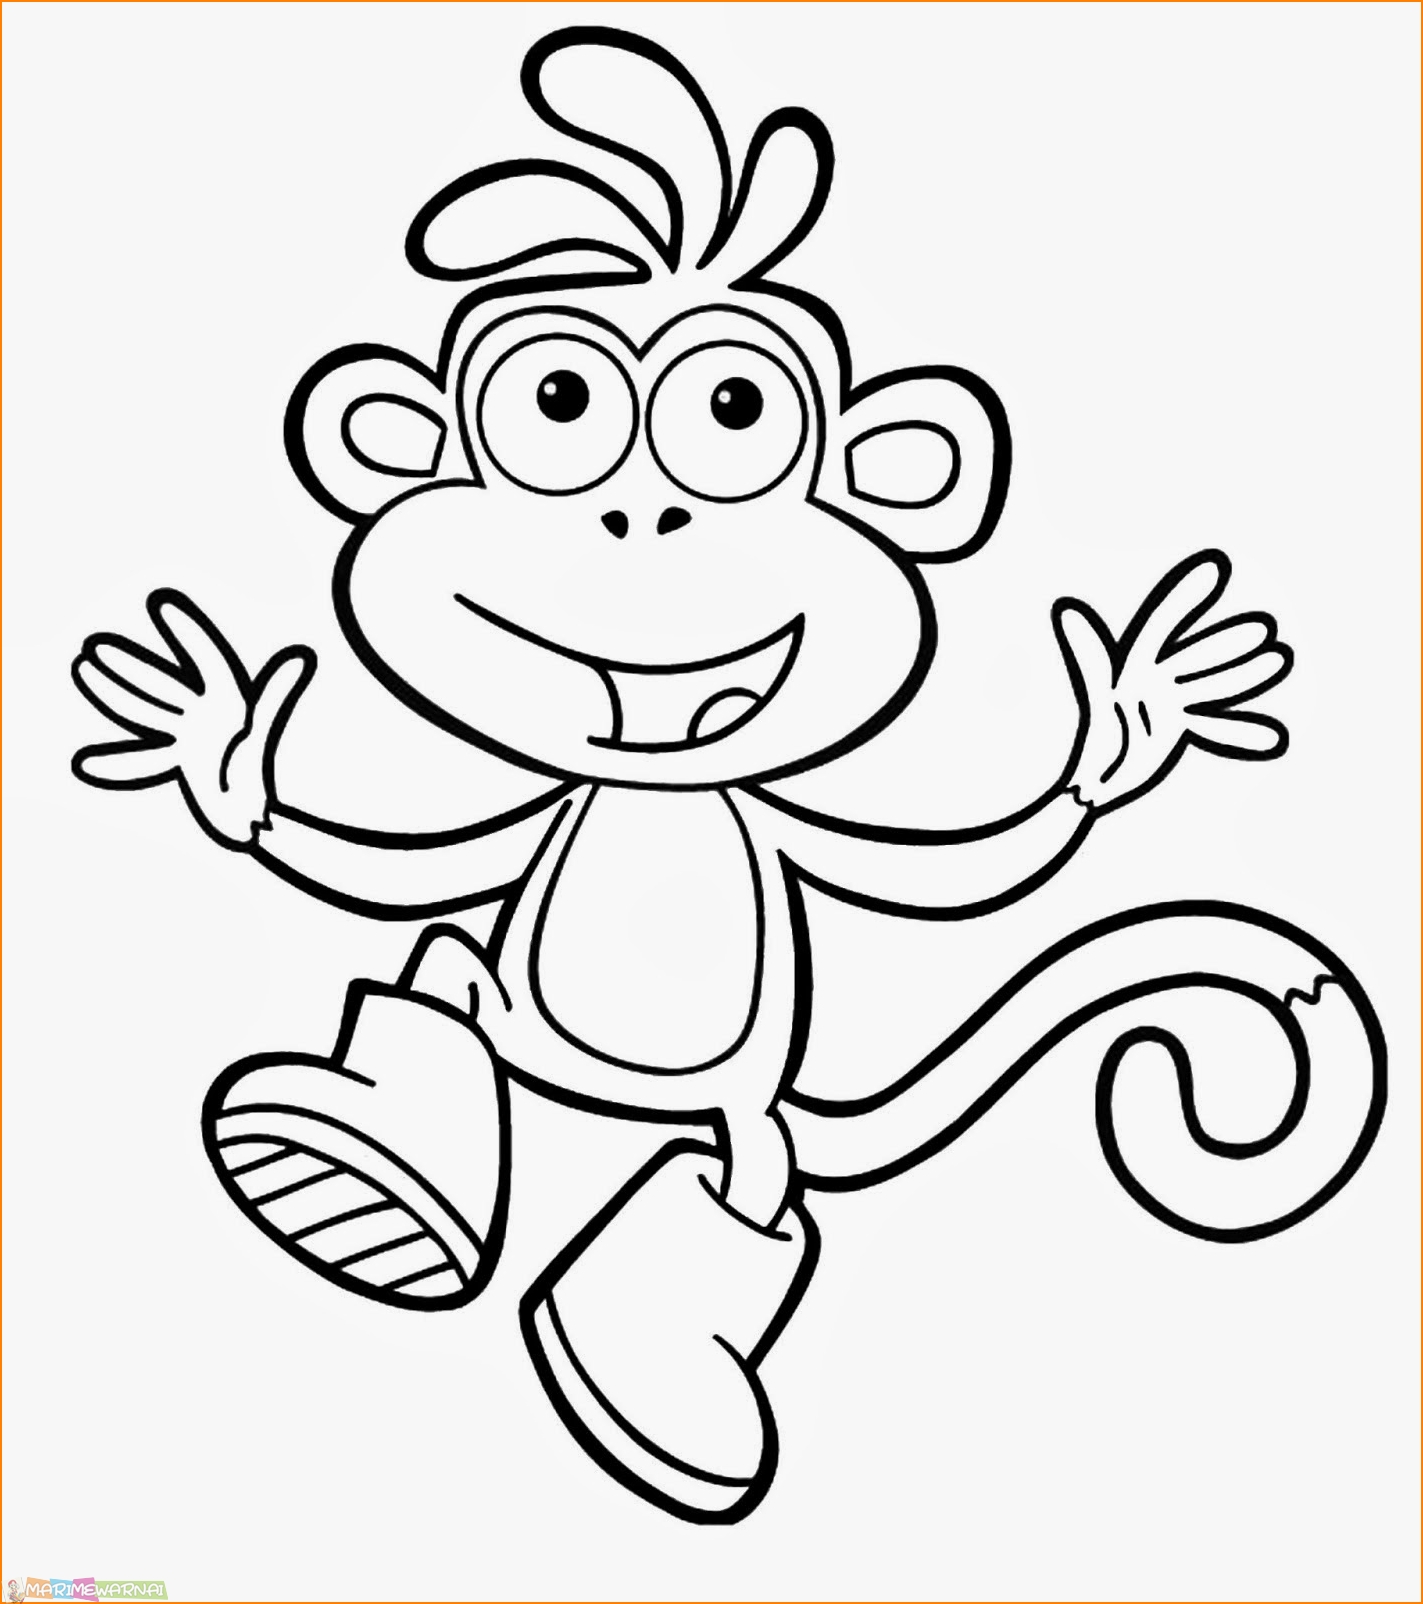  Mewarnai Gambar Monyet Untuk TK Paud SD Marimewarnai com